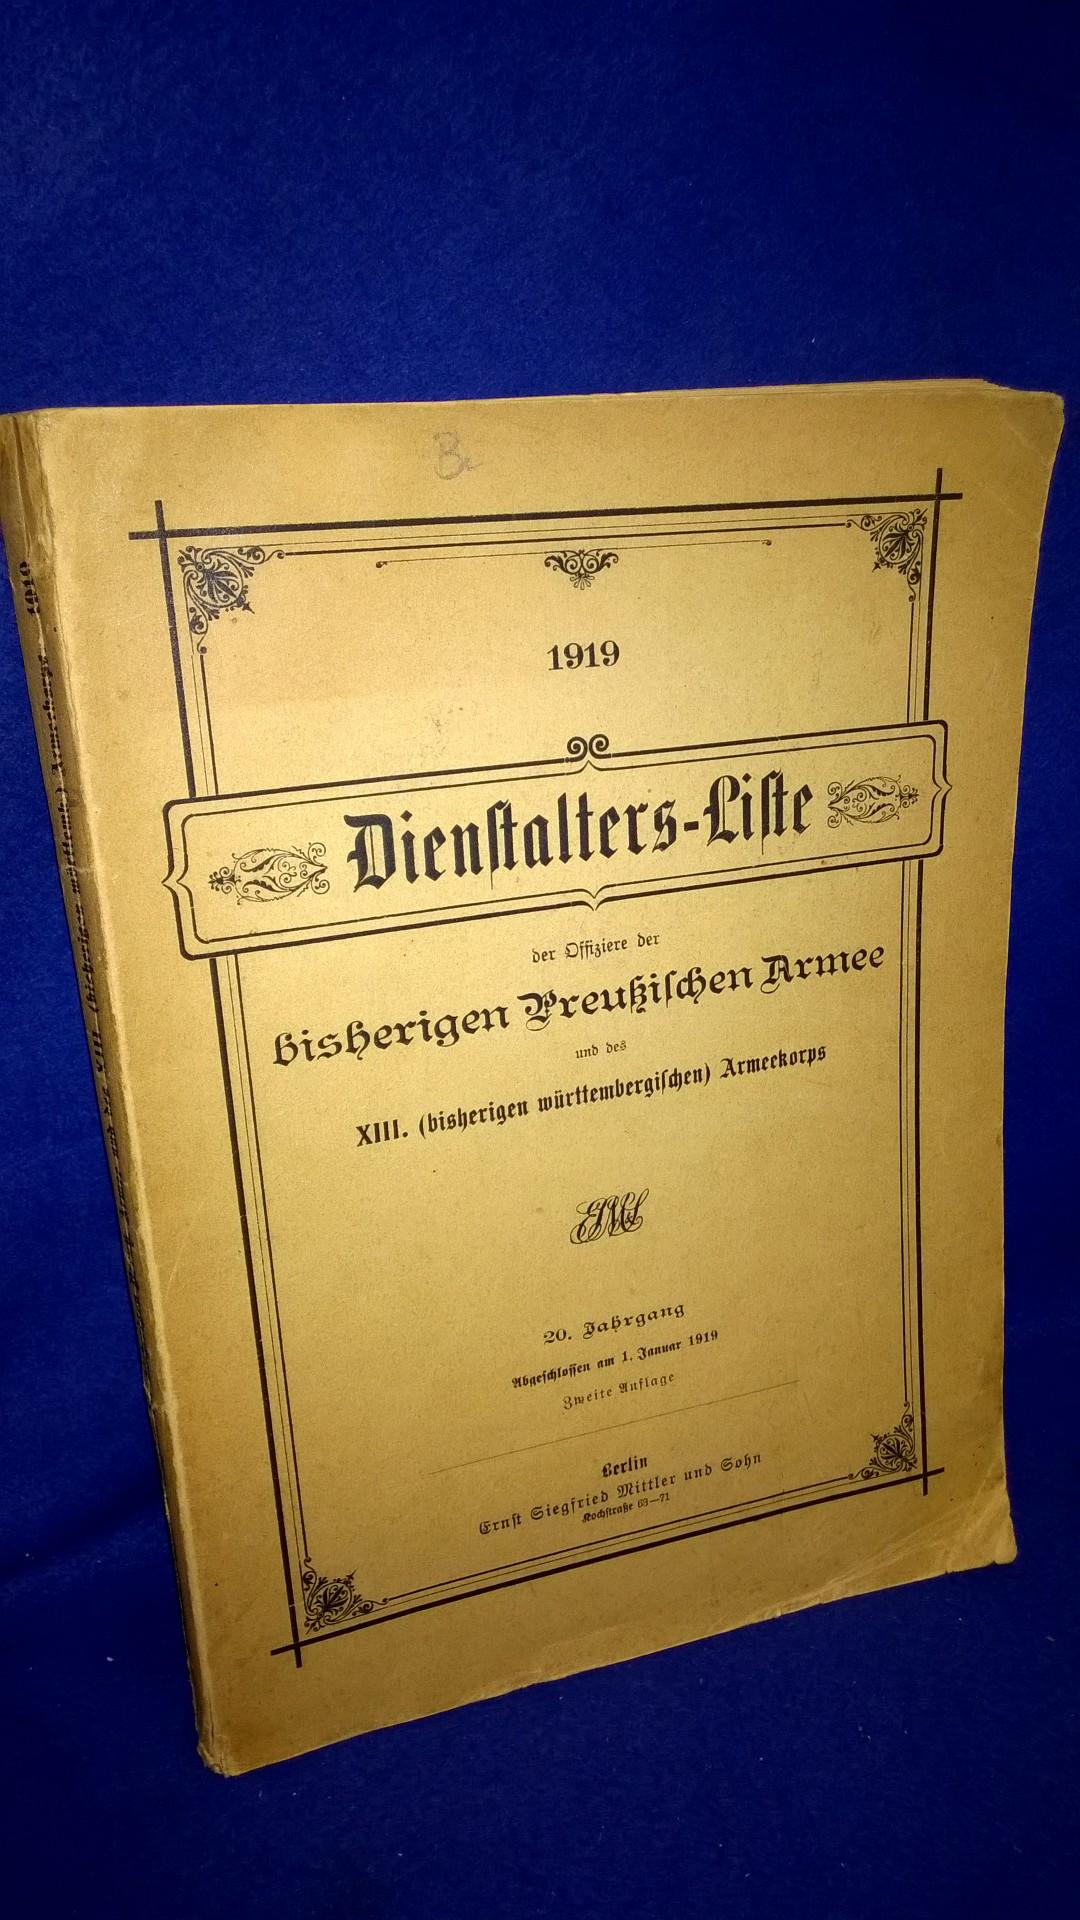 Dienstalters-Liste der Offiziere der bisherigen Preußischen Armee und des XIII.(württembergischen) Armeekorps 1919